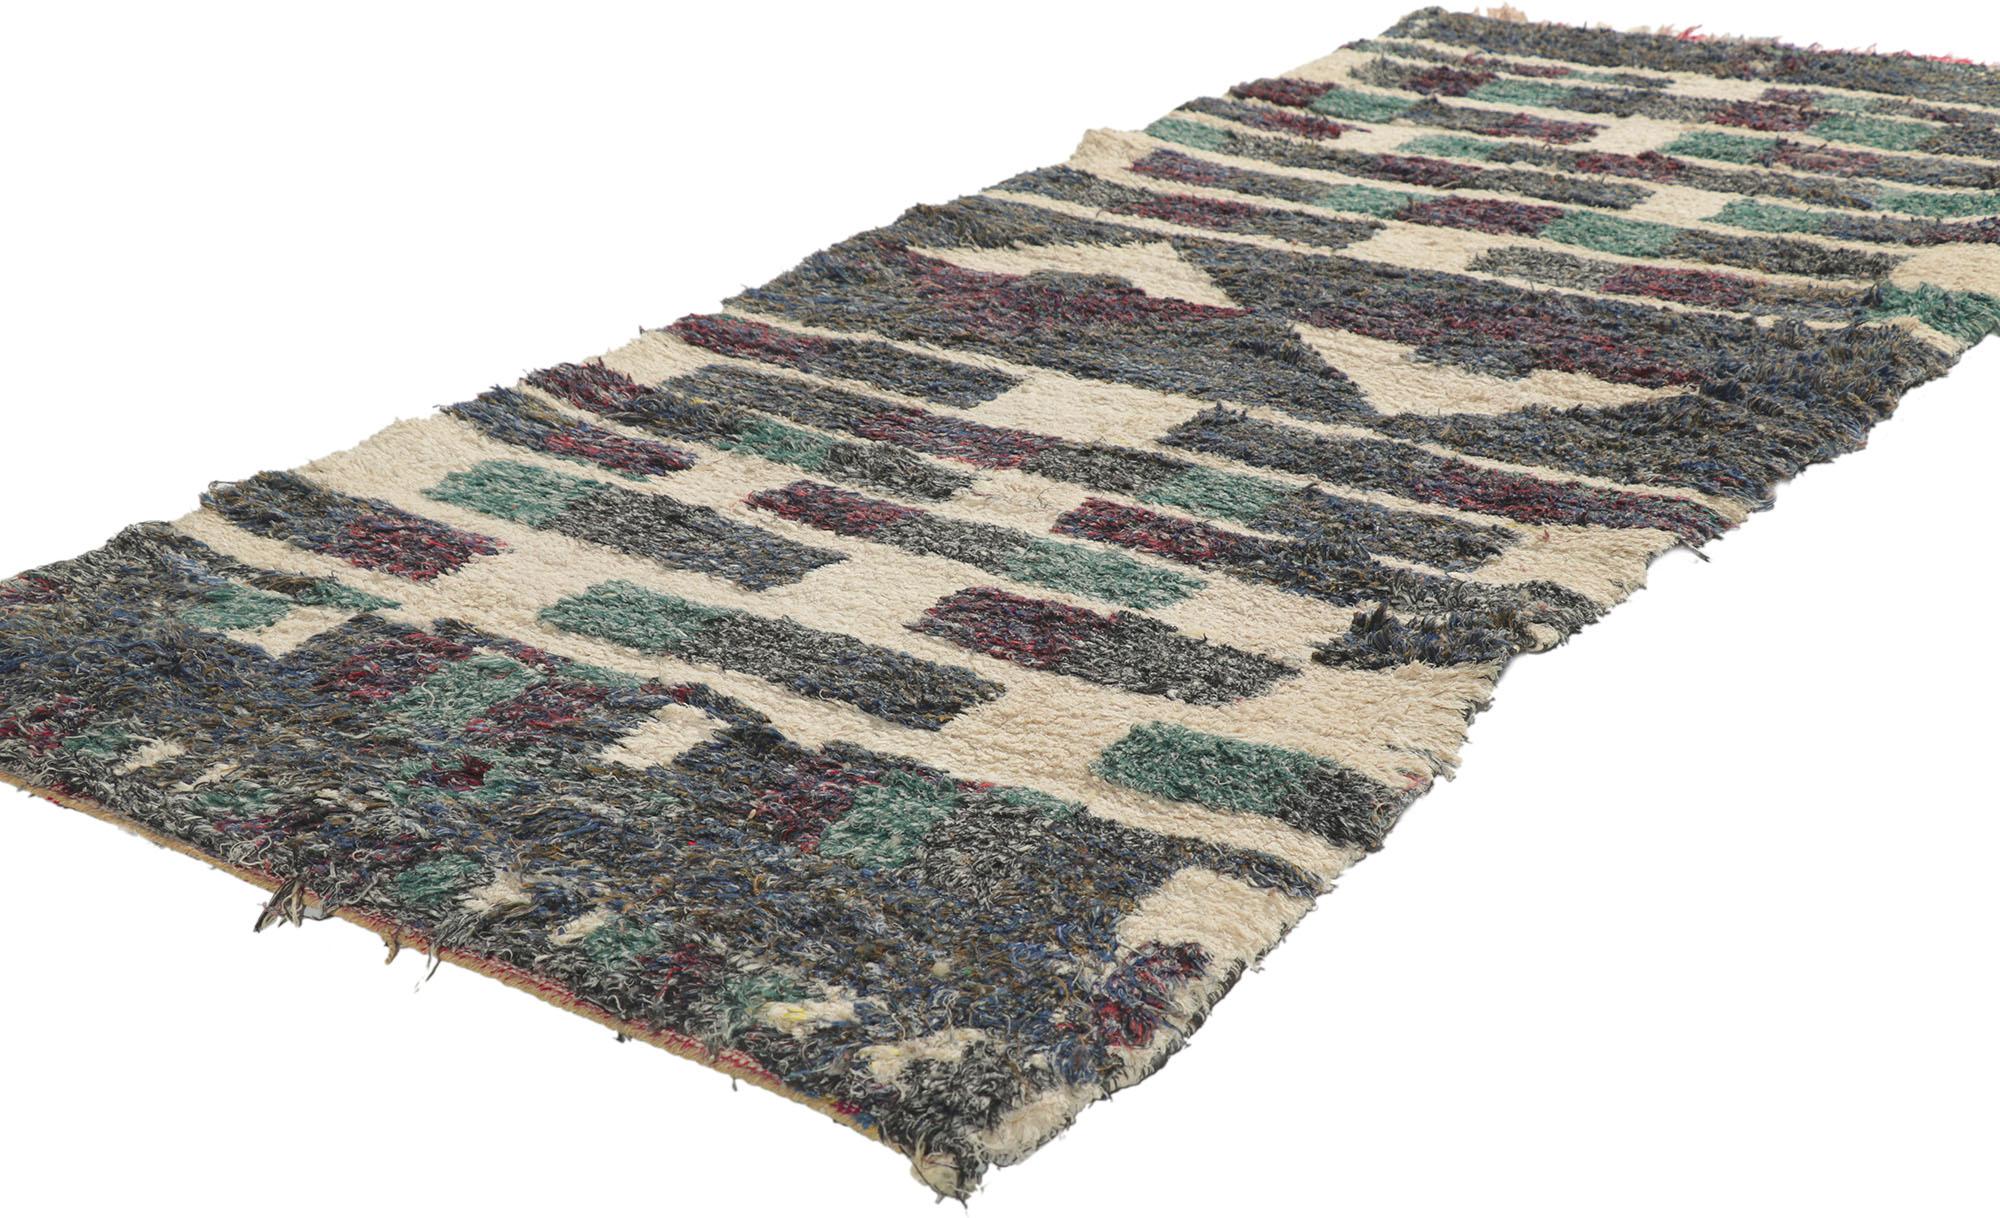 21602 Vintage Berber Marokkanischer Teppich 02'08 x 05'11. Dieser handgeknüpfte marokkanische Azilal-Teppich aus alter Berberwolle mit seinem kühnen, ausdrucksstarken Stammesmuster, seinen unglaublichen Details und seiner Textur ist eine fesselnde